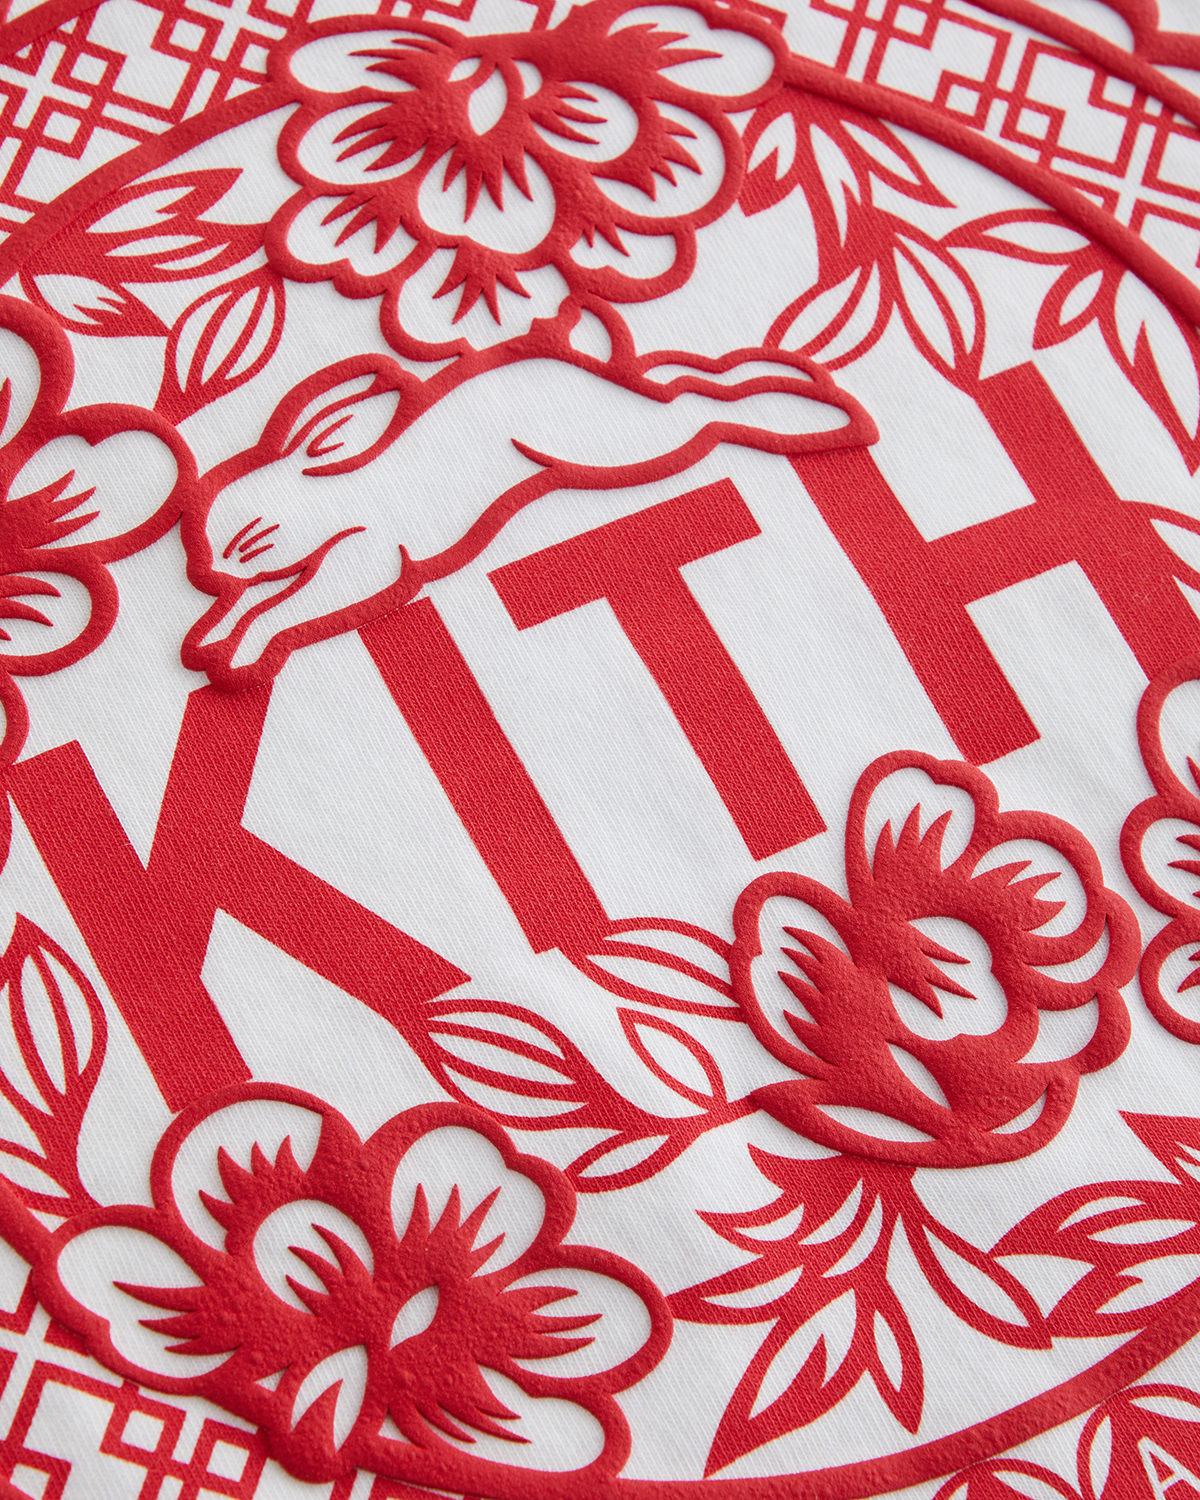 Kith Treats Tokyo　The Rabbit　KITH（キス）